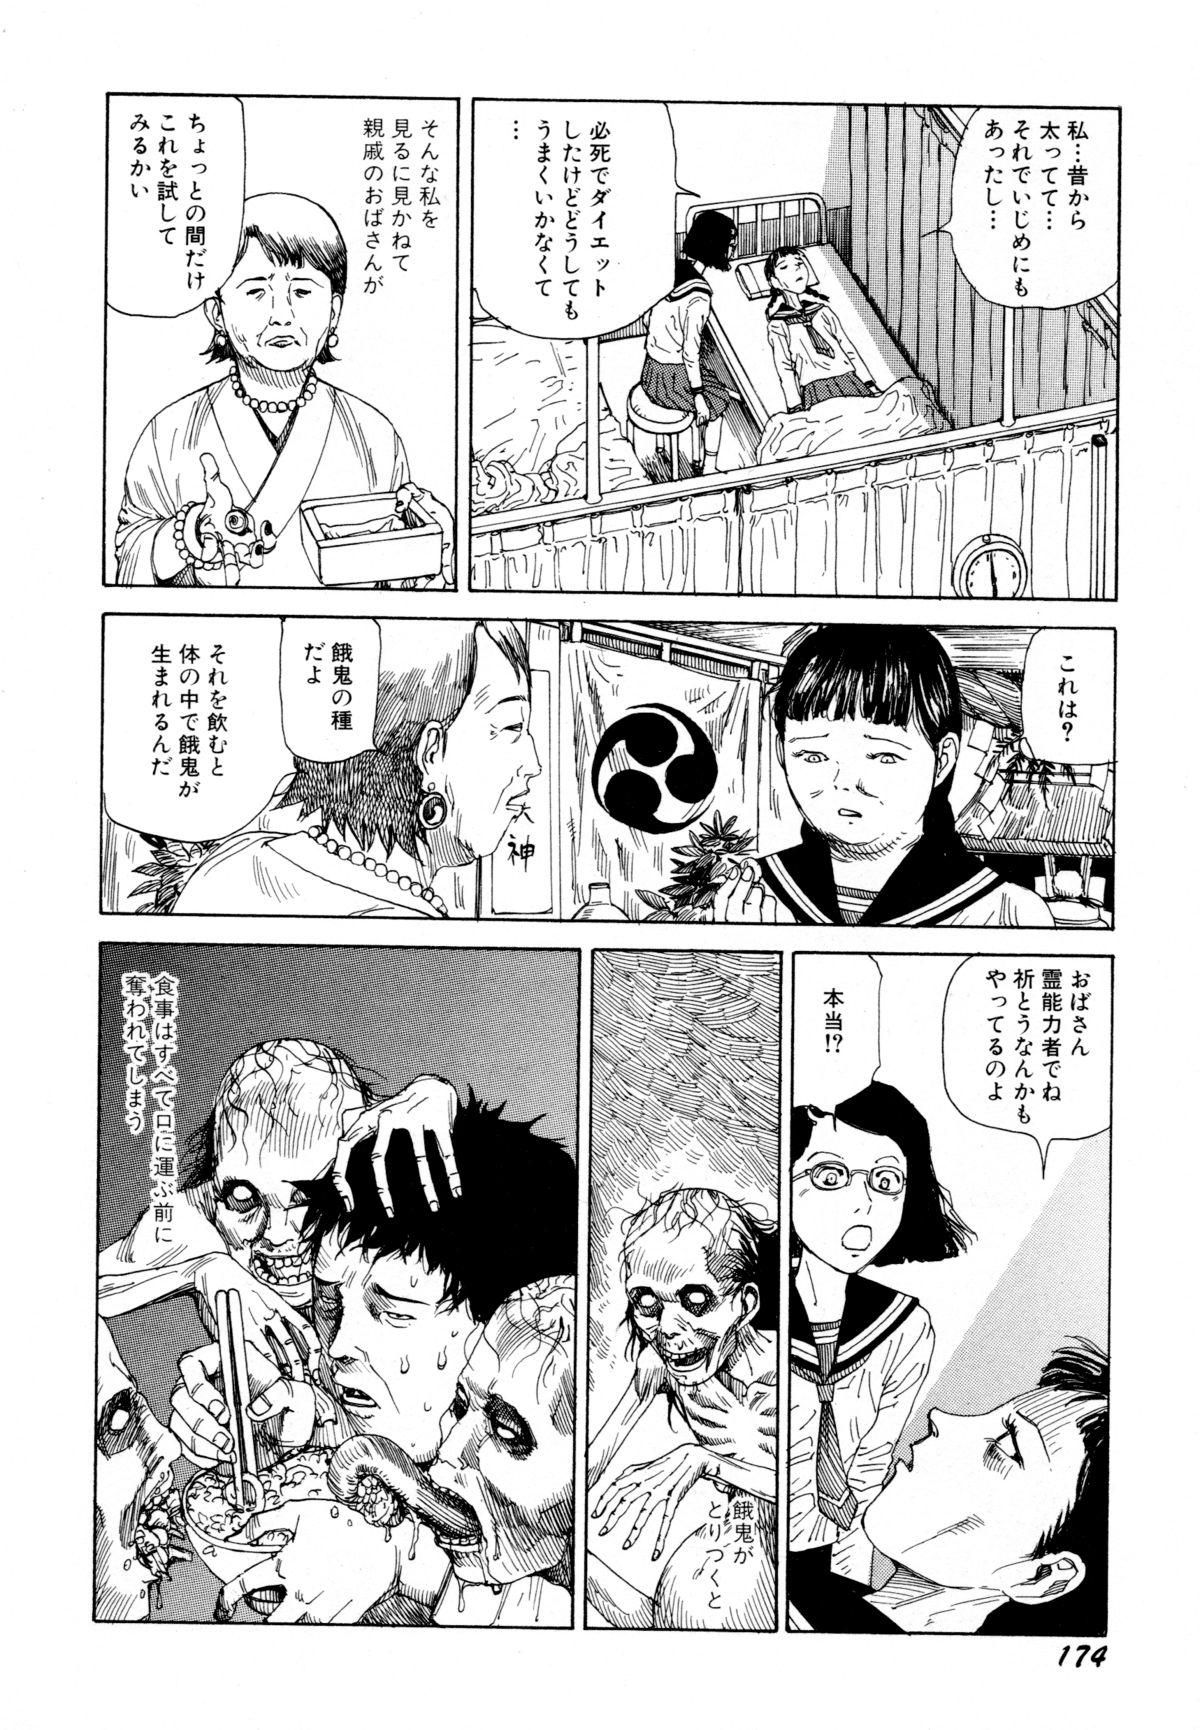 Arijigoku vs Barabara Shoujo - Antlion vs BaraBara Girl 175